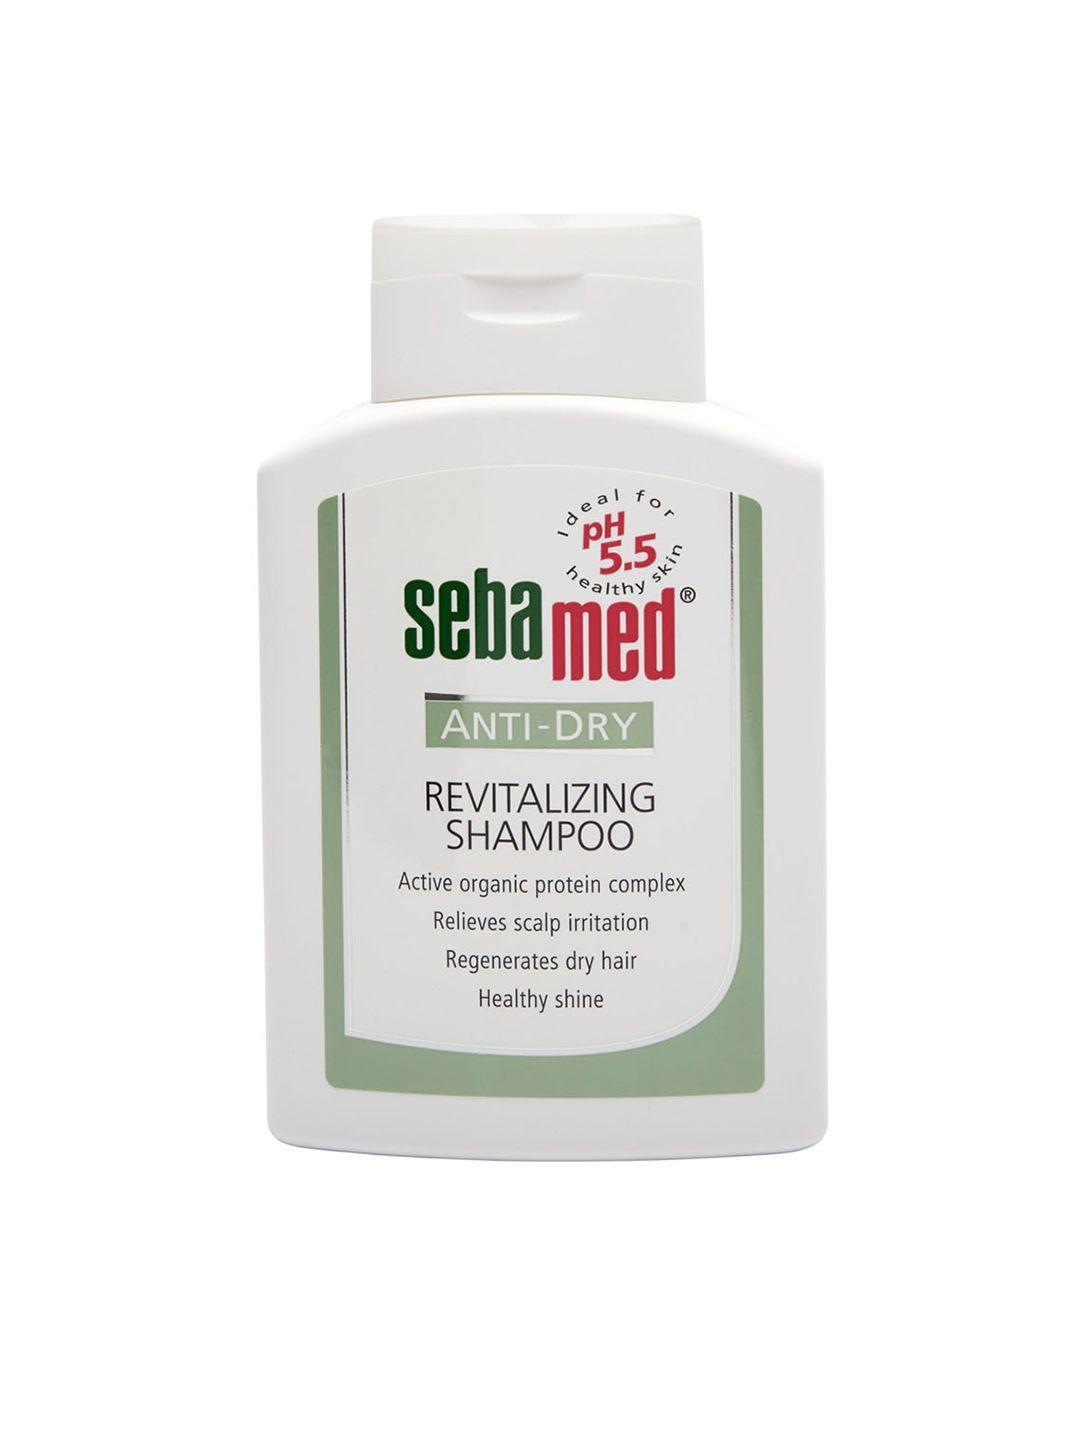 sebamed unisex anti-dry revitalizing shampoo 200 ml